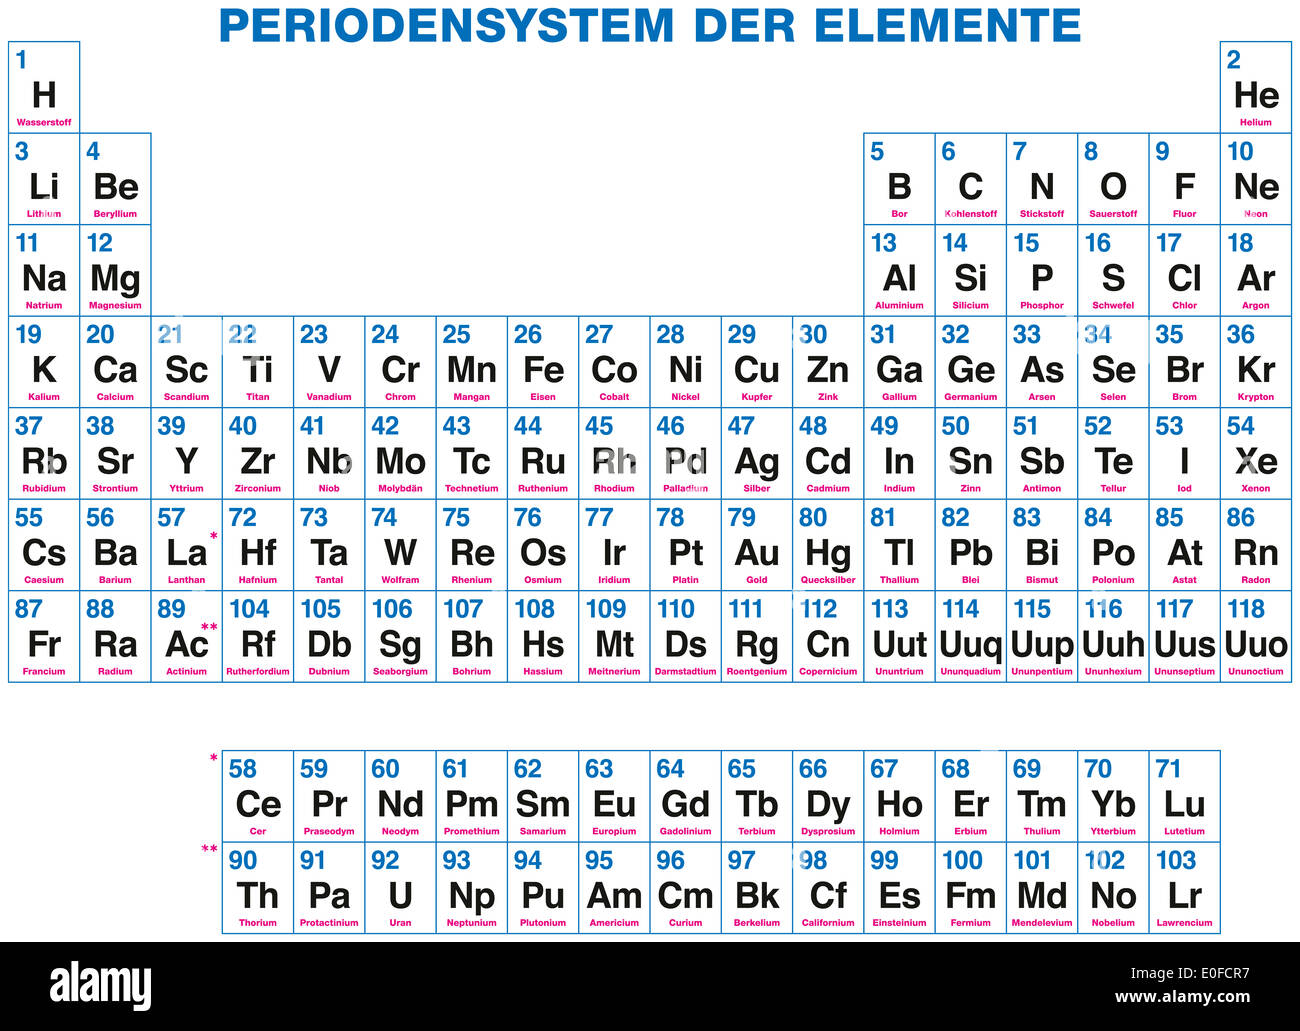 Periodensystem der Elemente - deutsche Beschriftung - 118 chemische Elemente  auf der Grundlage ihrer Ordnungszahlen organisiert Stockfotografie - Alamy